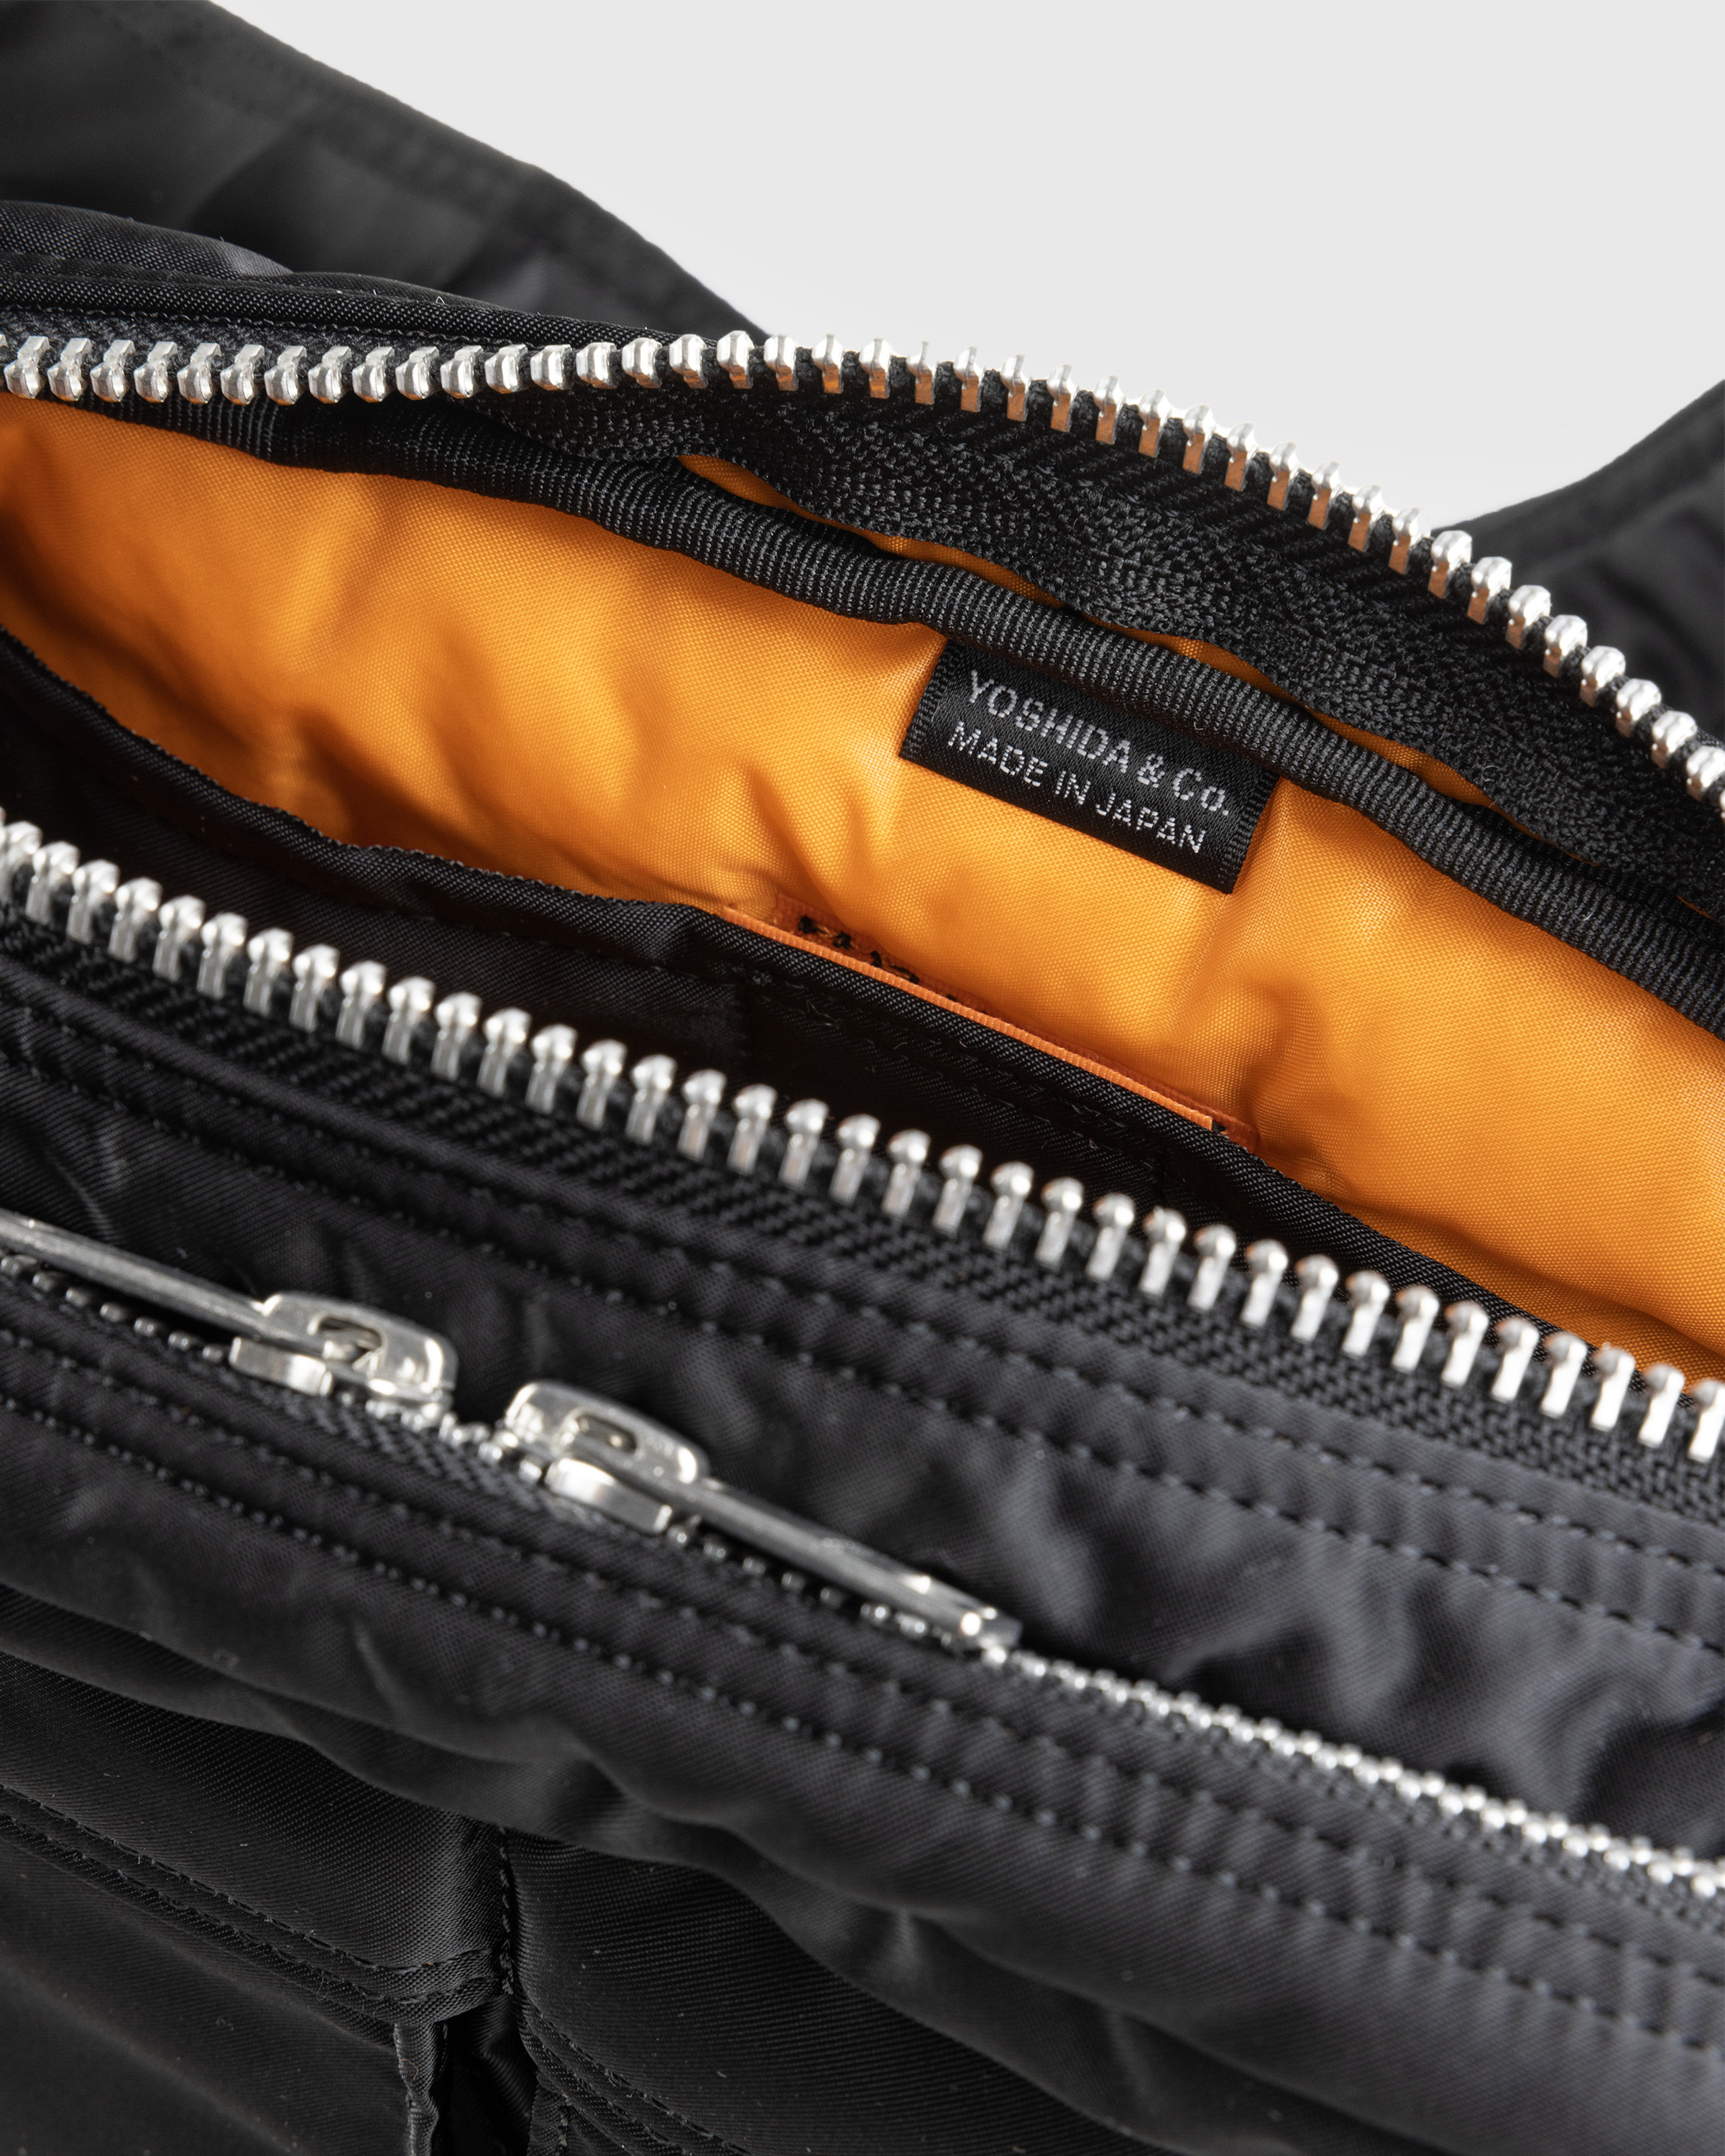 Porter-Yoshida & Co. – Tanker Shoulder Bag Black - Shoulder Bags - Black - Image 4